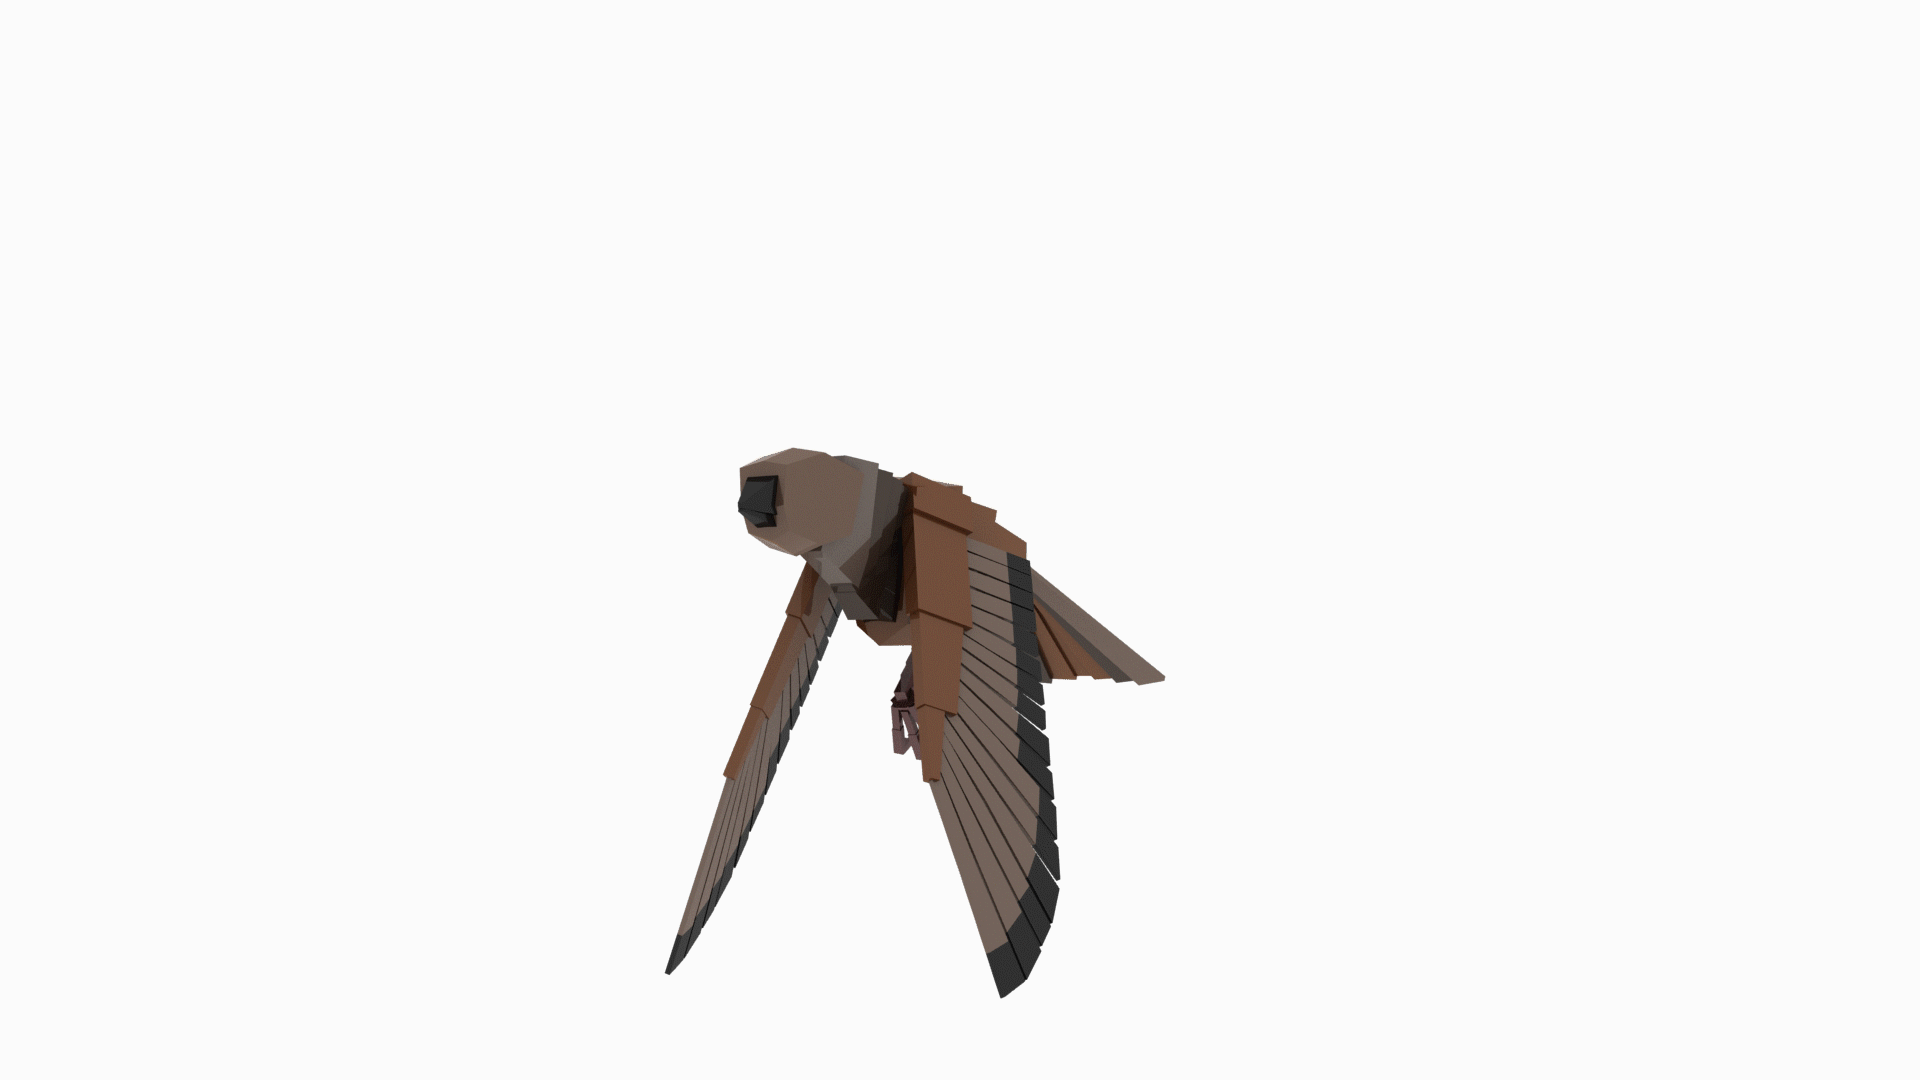 ArtStation - Bird Animation